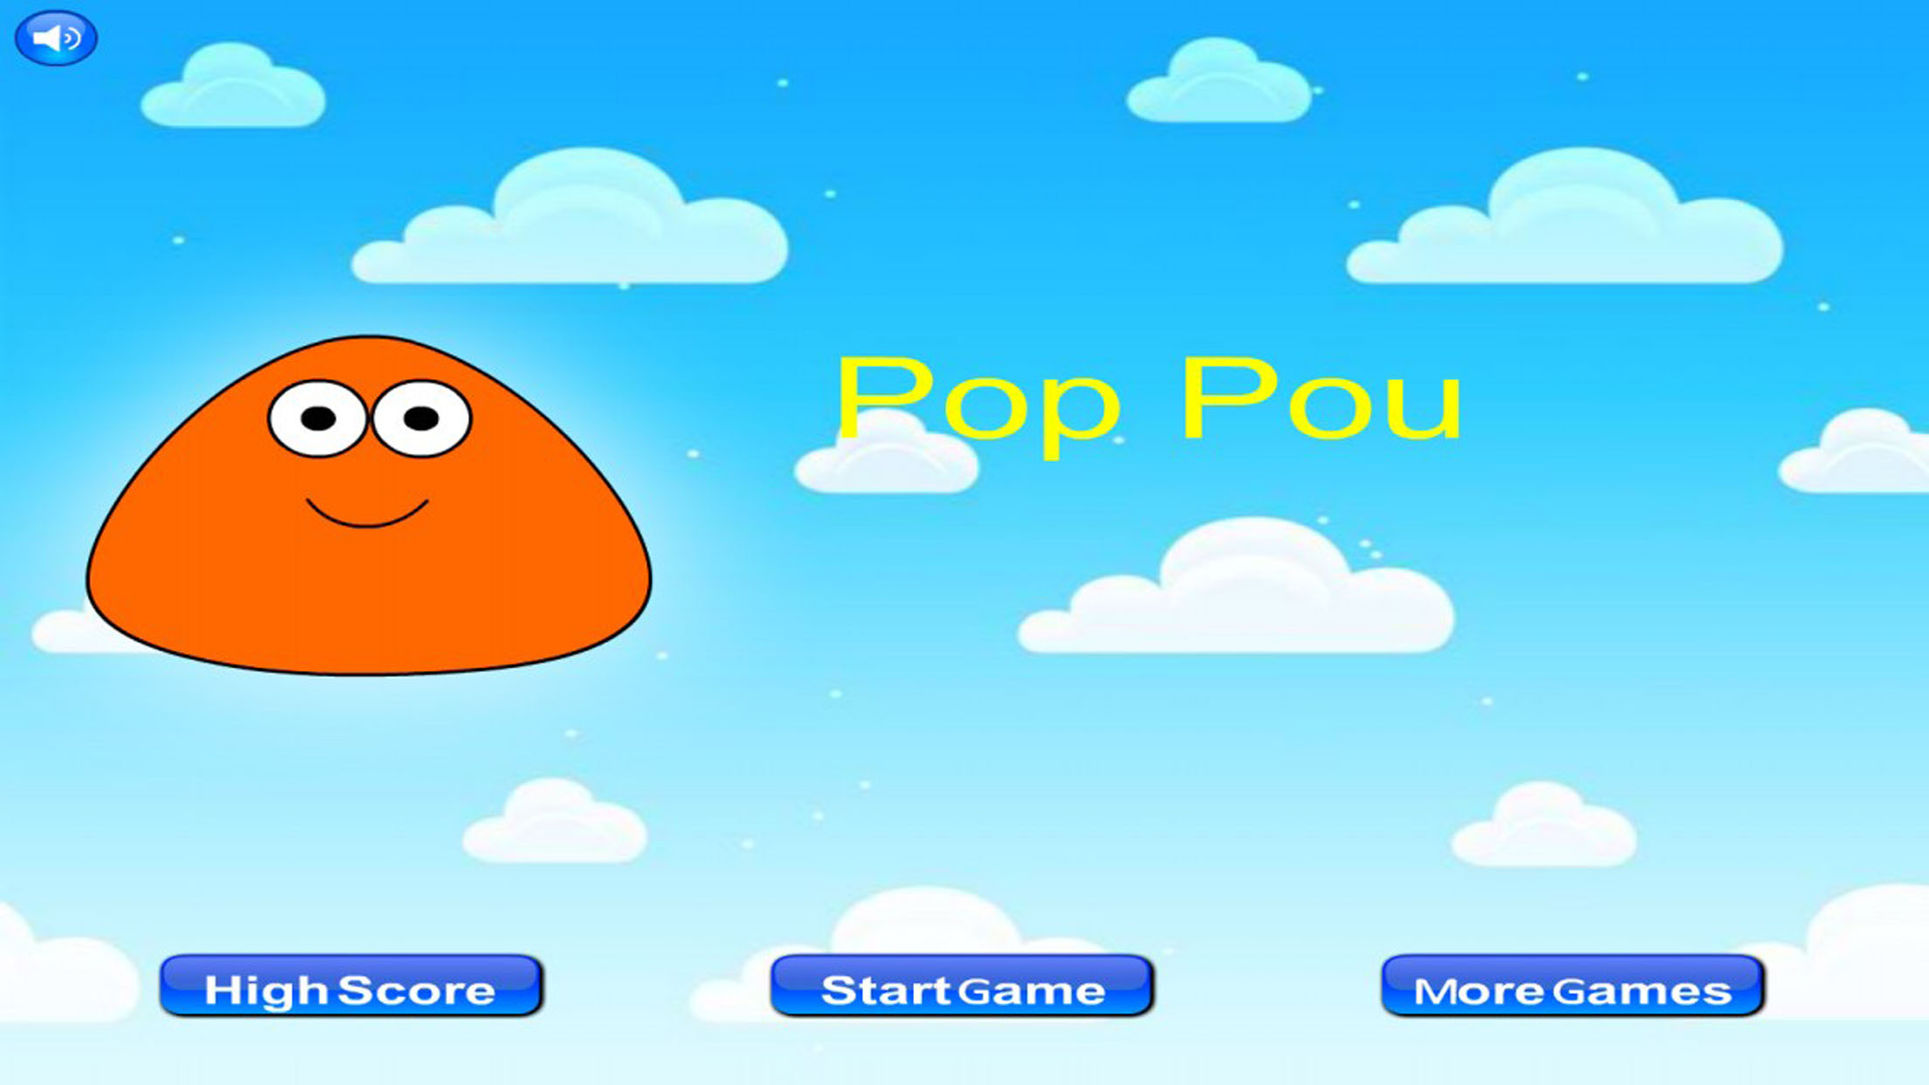 Pou Sur PC – How to Download Pou On PC?